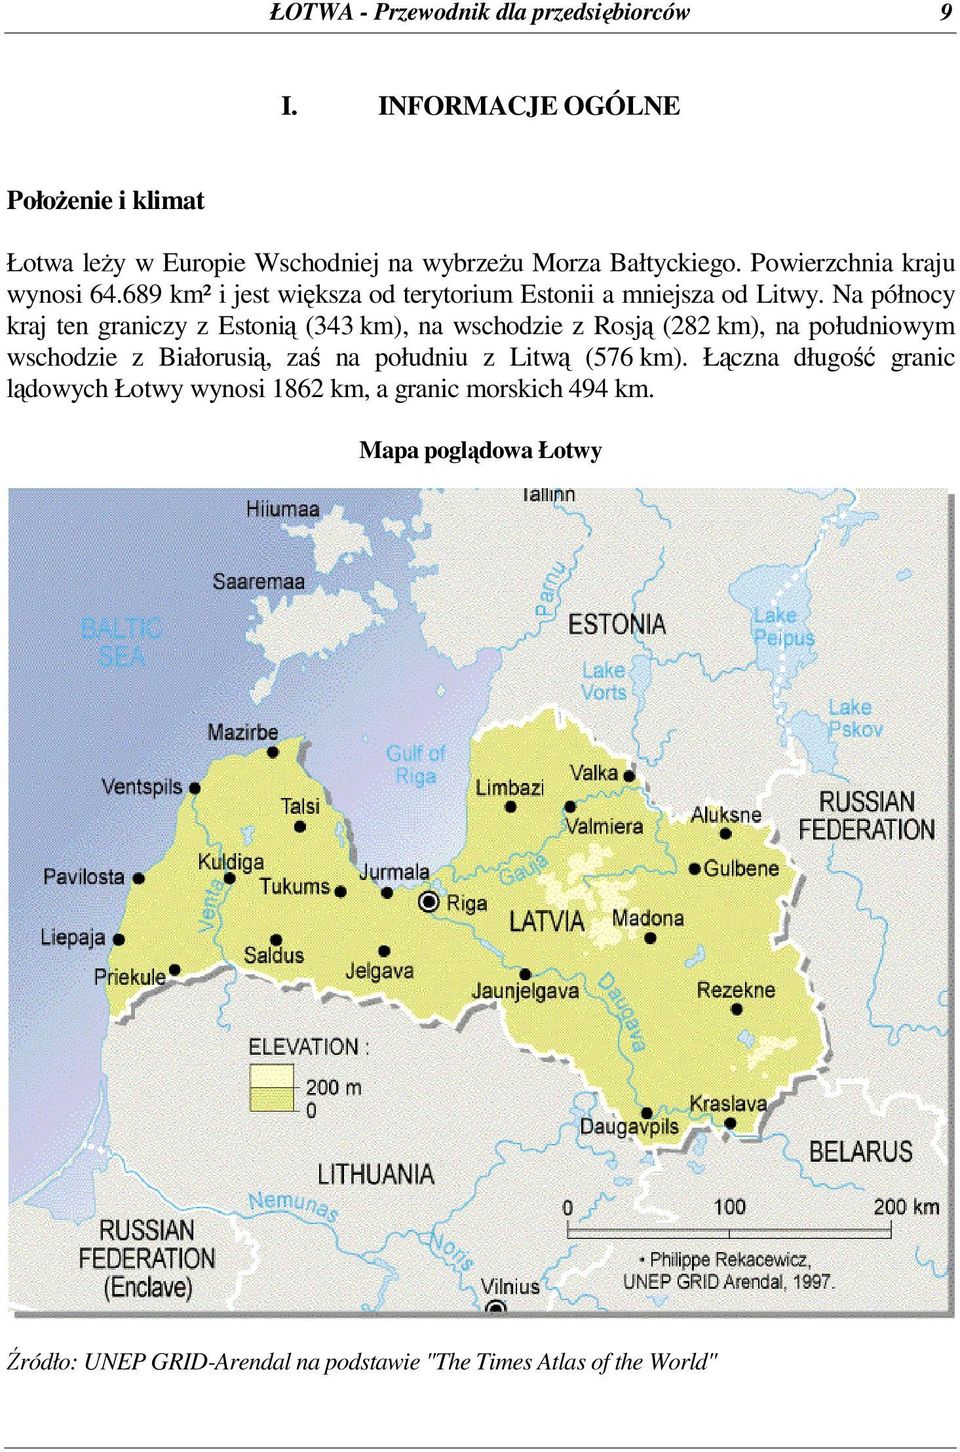 689 km² i jest wiksza od terytorium Estonii a mniejsza od Litwy.